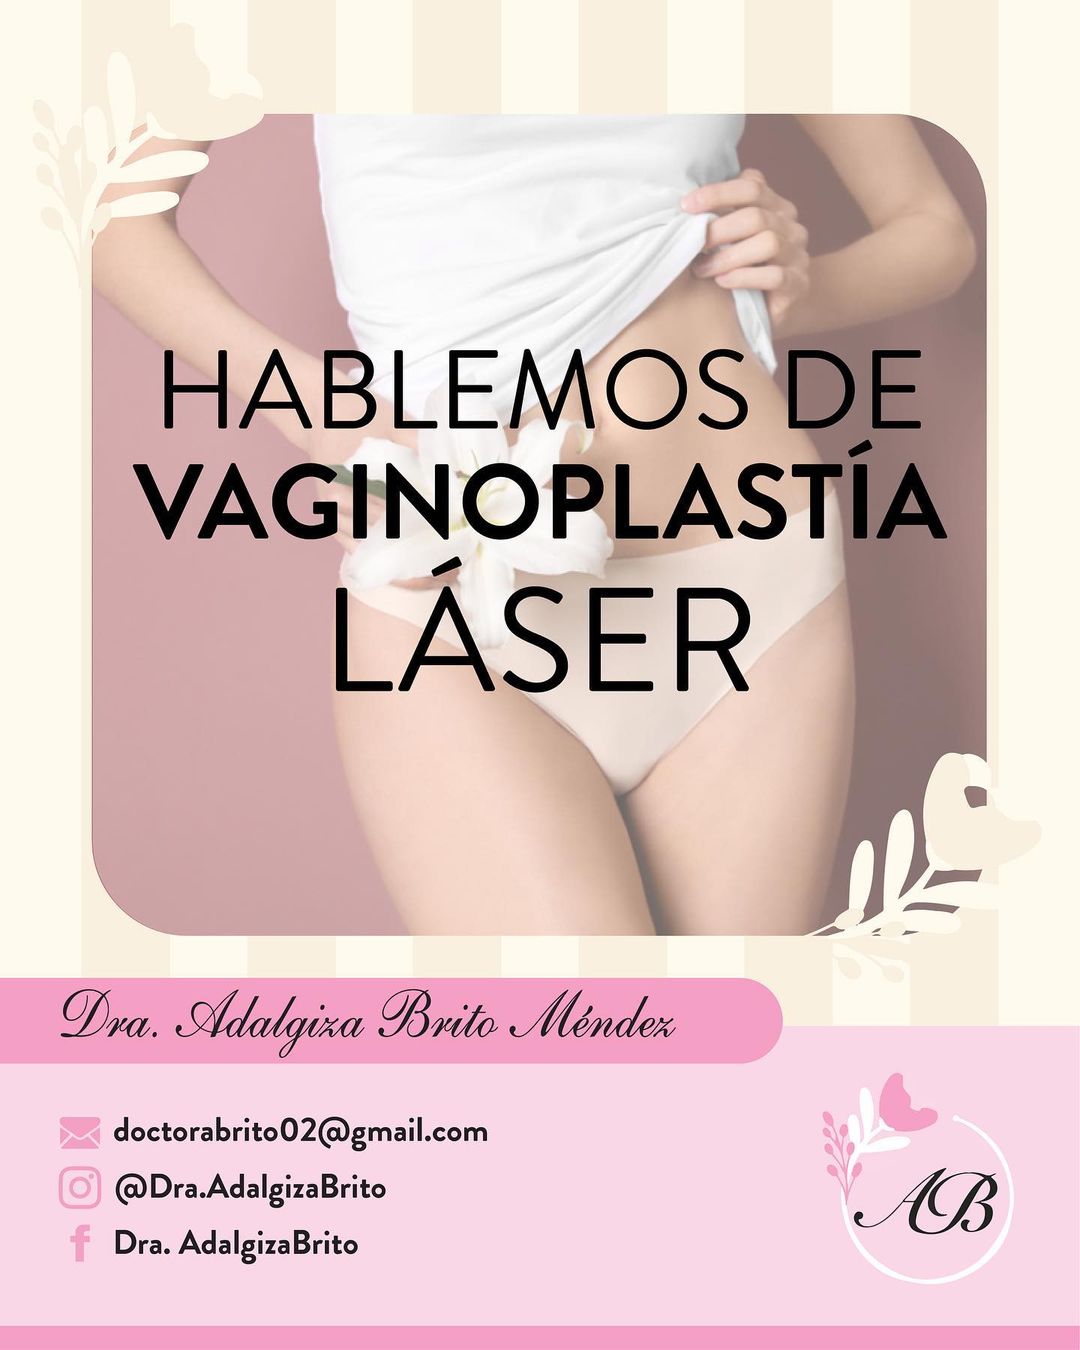 Hablemos de Vaginoplastía Láser, Dra. Adalgiza Brito, ginecólogo | Medii.care